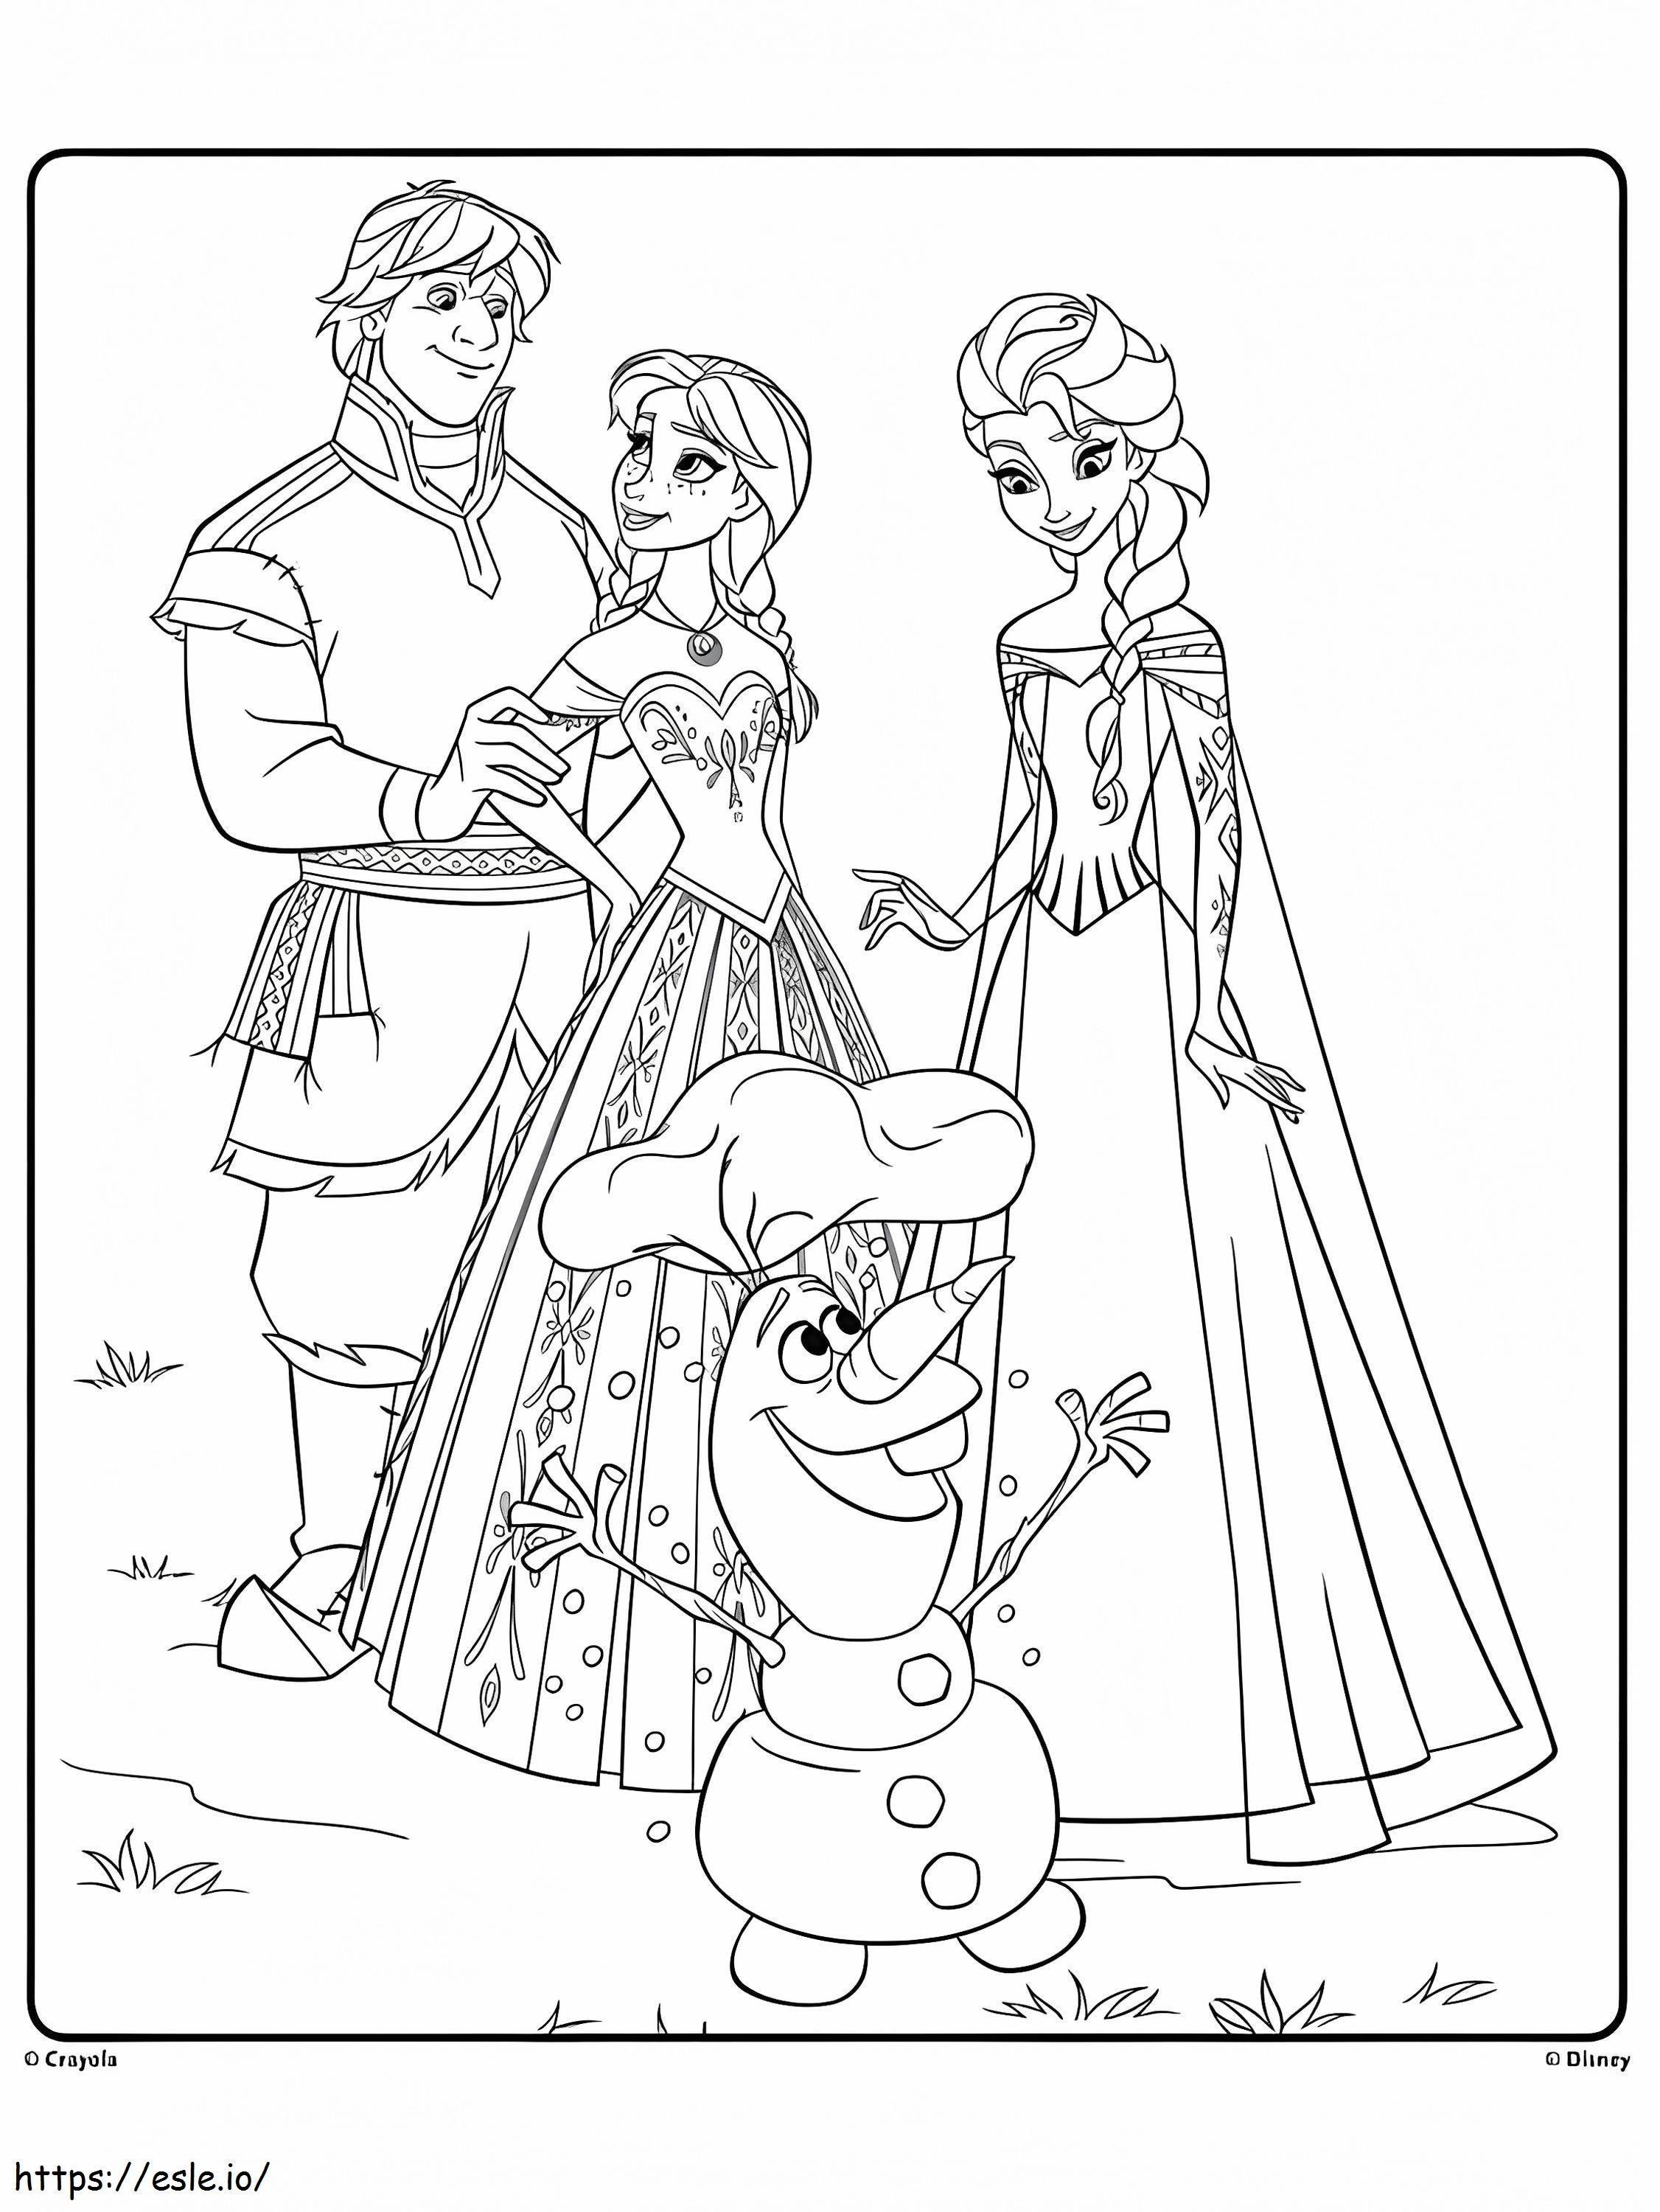 Olafa i przyjaciele kolorowanka